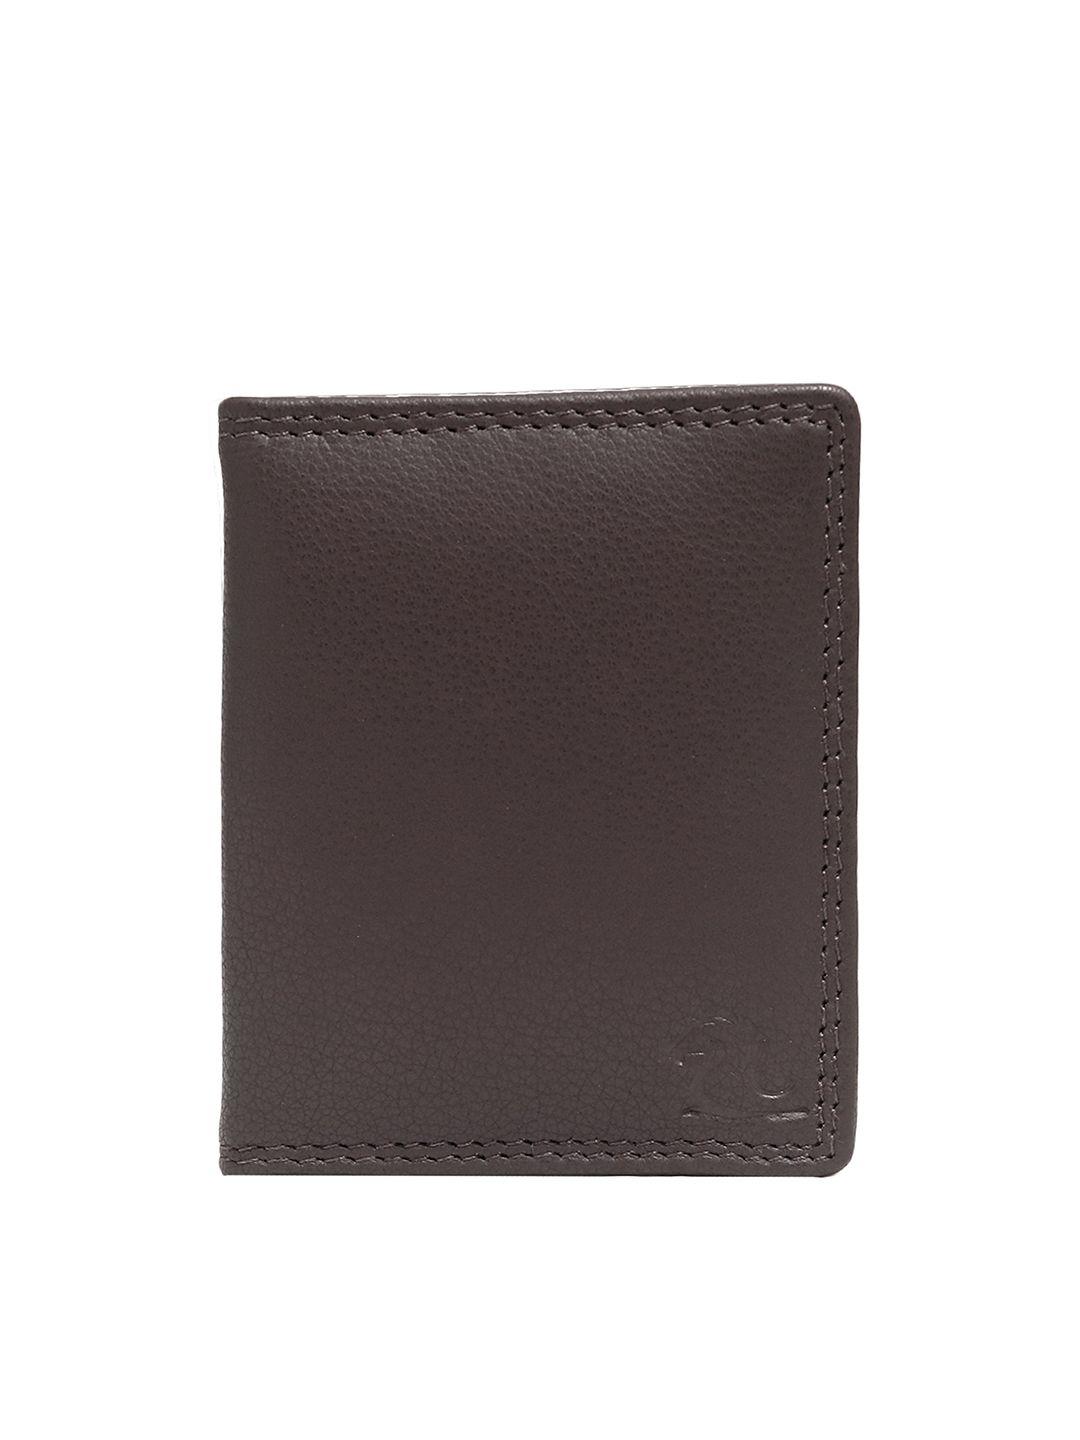 kara men brown leather bifold card holder